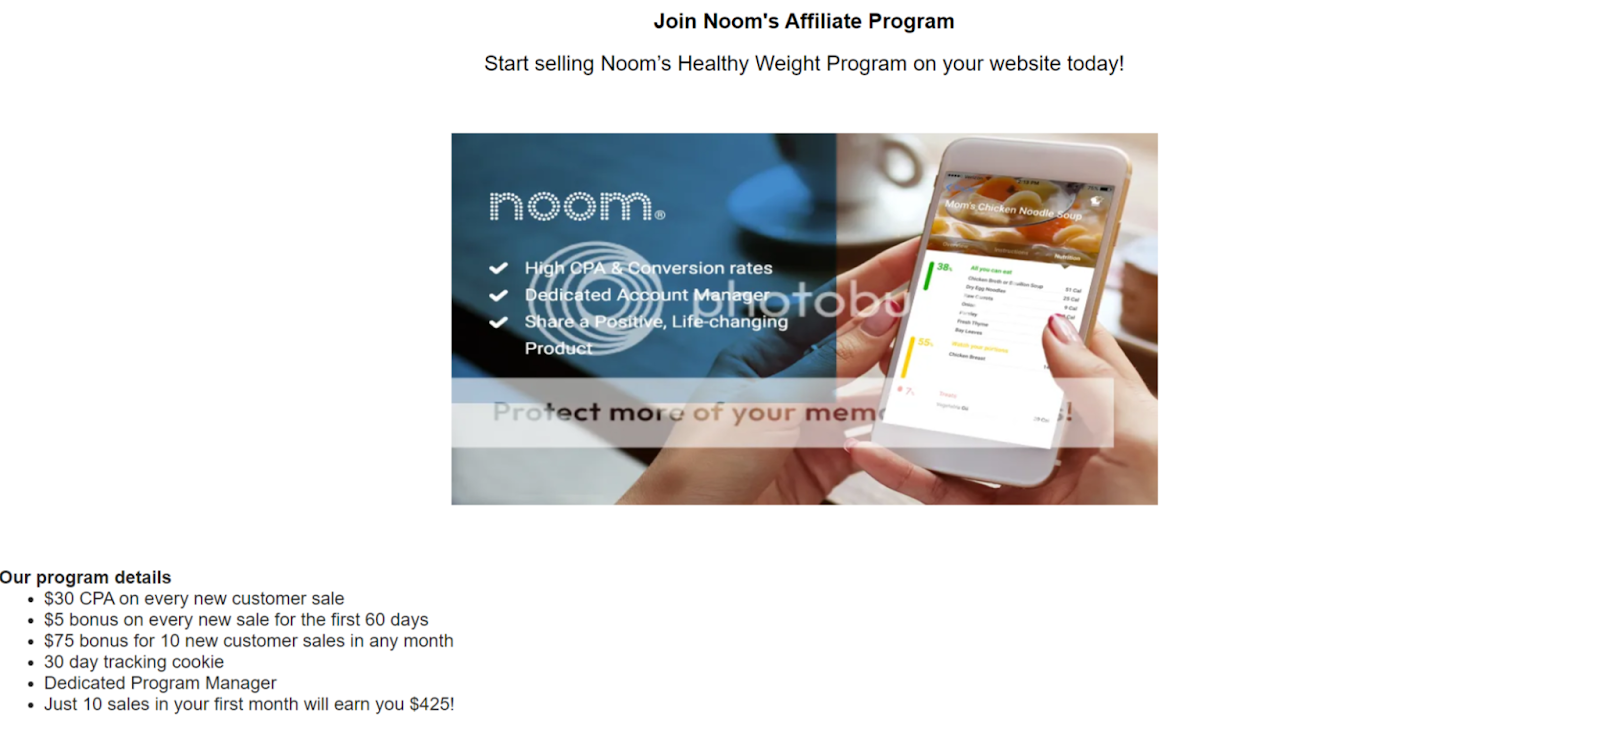 Noom affiliate program details page